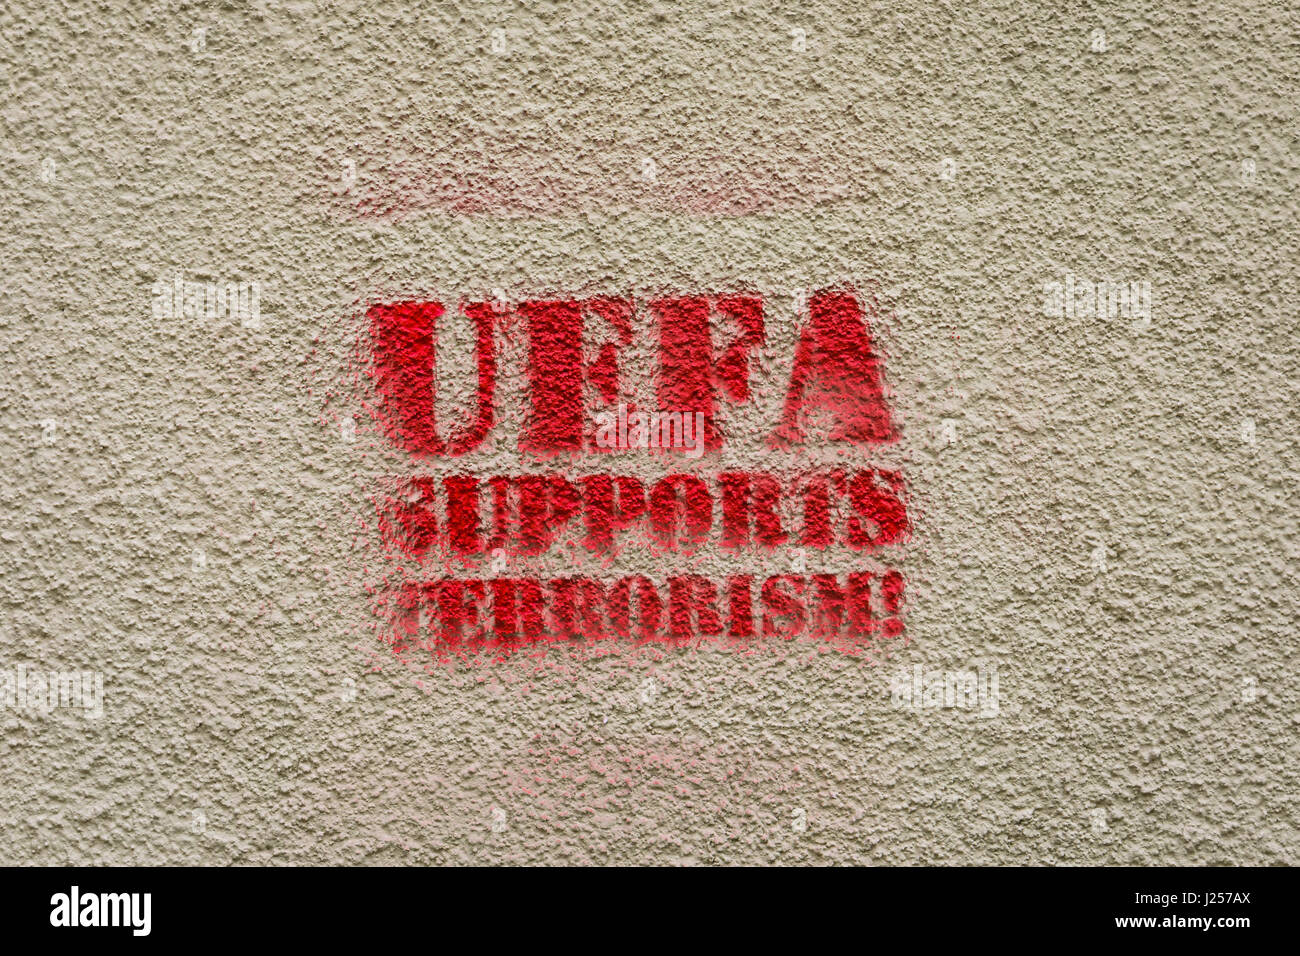 L'UEFA (Union des Associations Européennes de Football) prend en charge les graffiti terorism Banque D'Images